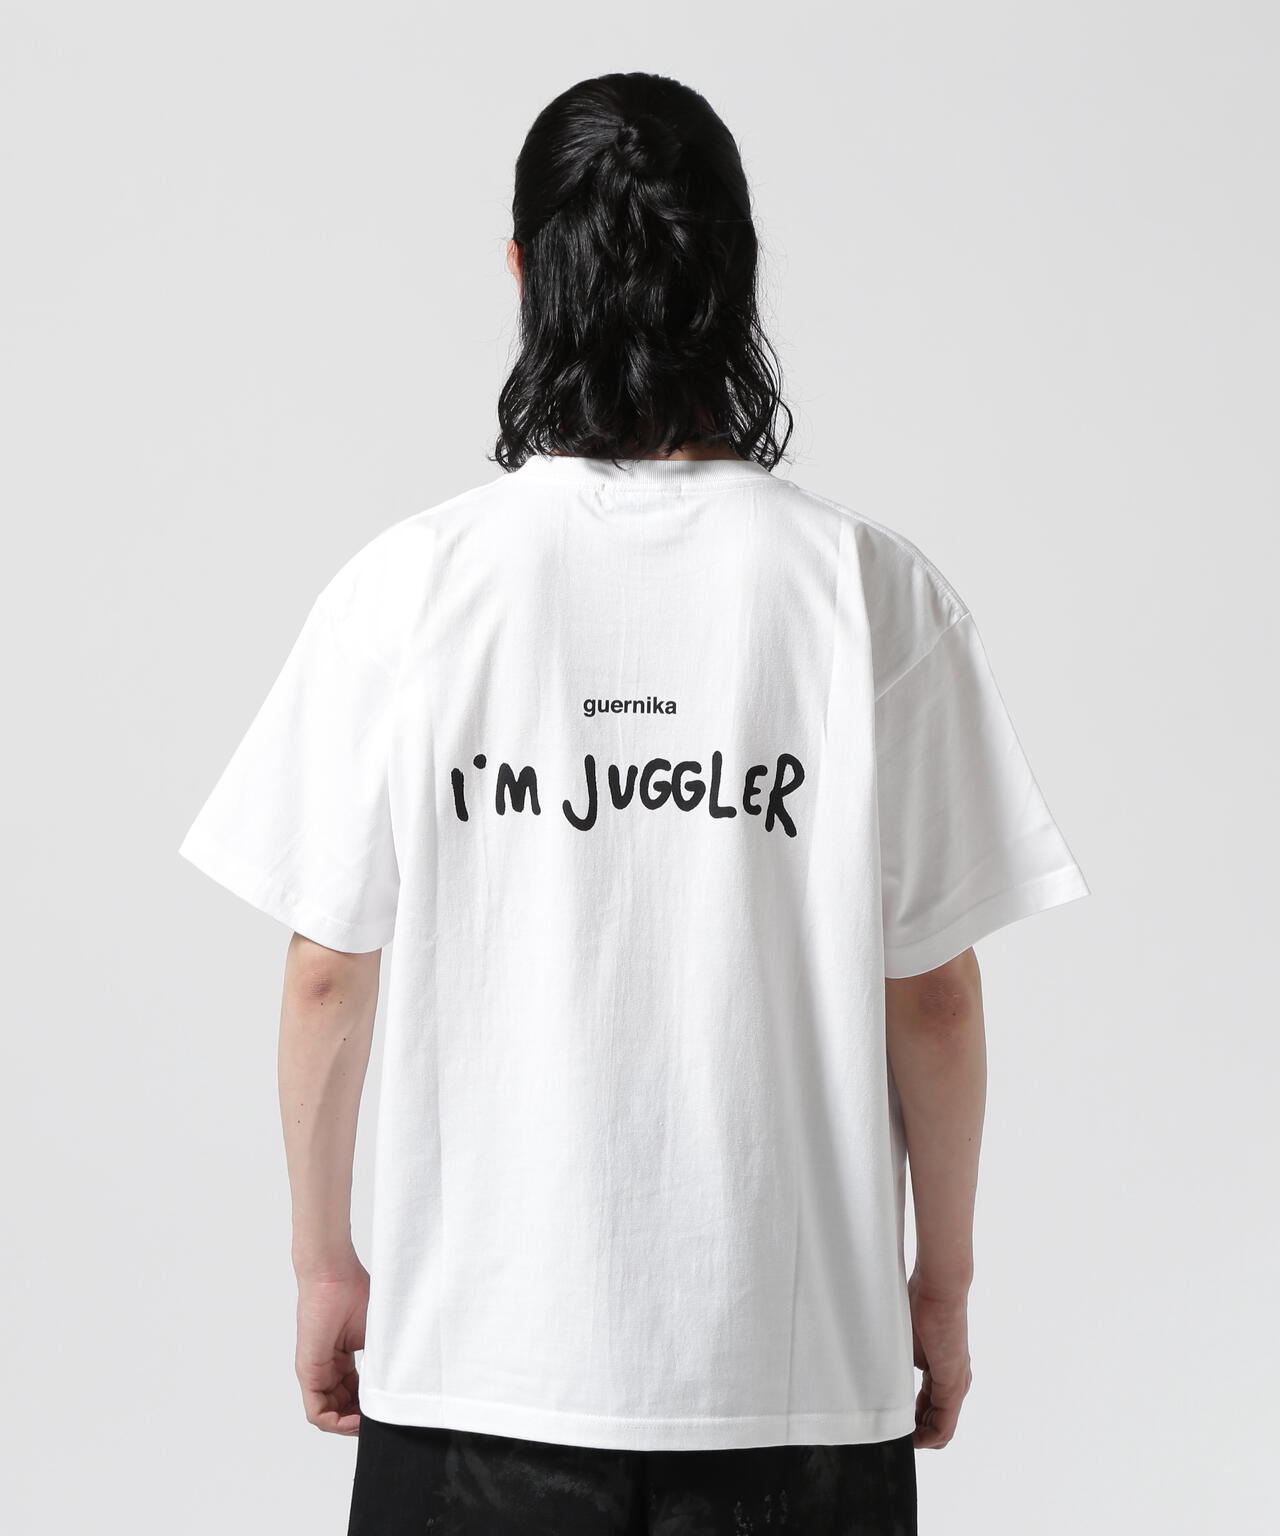 【魅力の】guernika JUGGLER T-shirt / GOGO!CHANCE L Tシャツ/カットソー(半袖/袖なし)